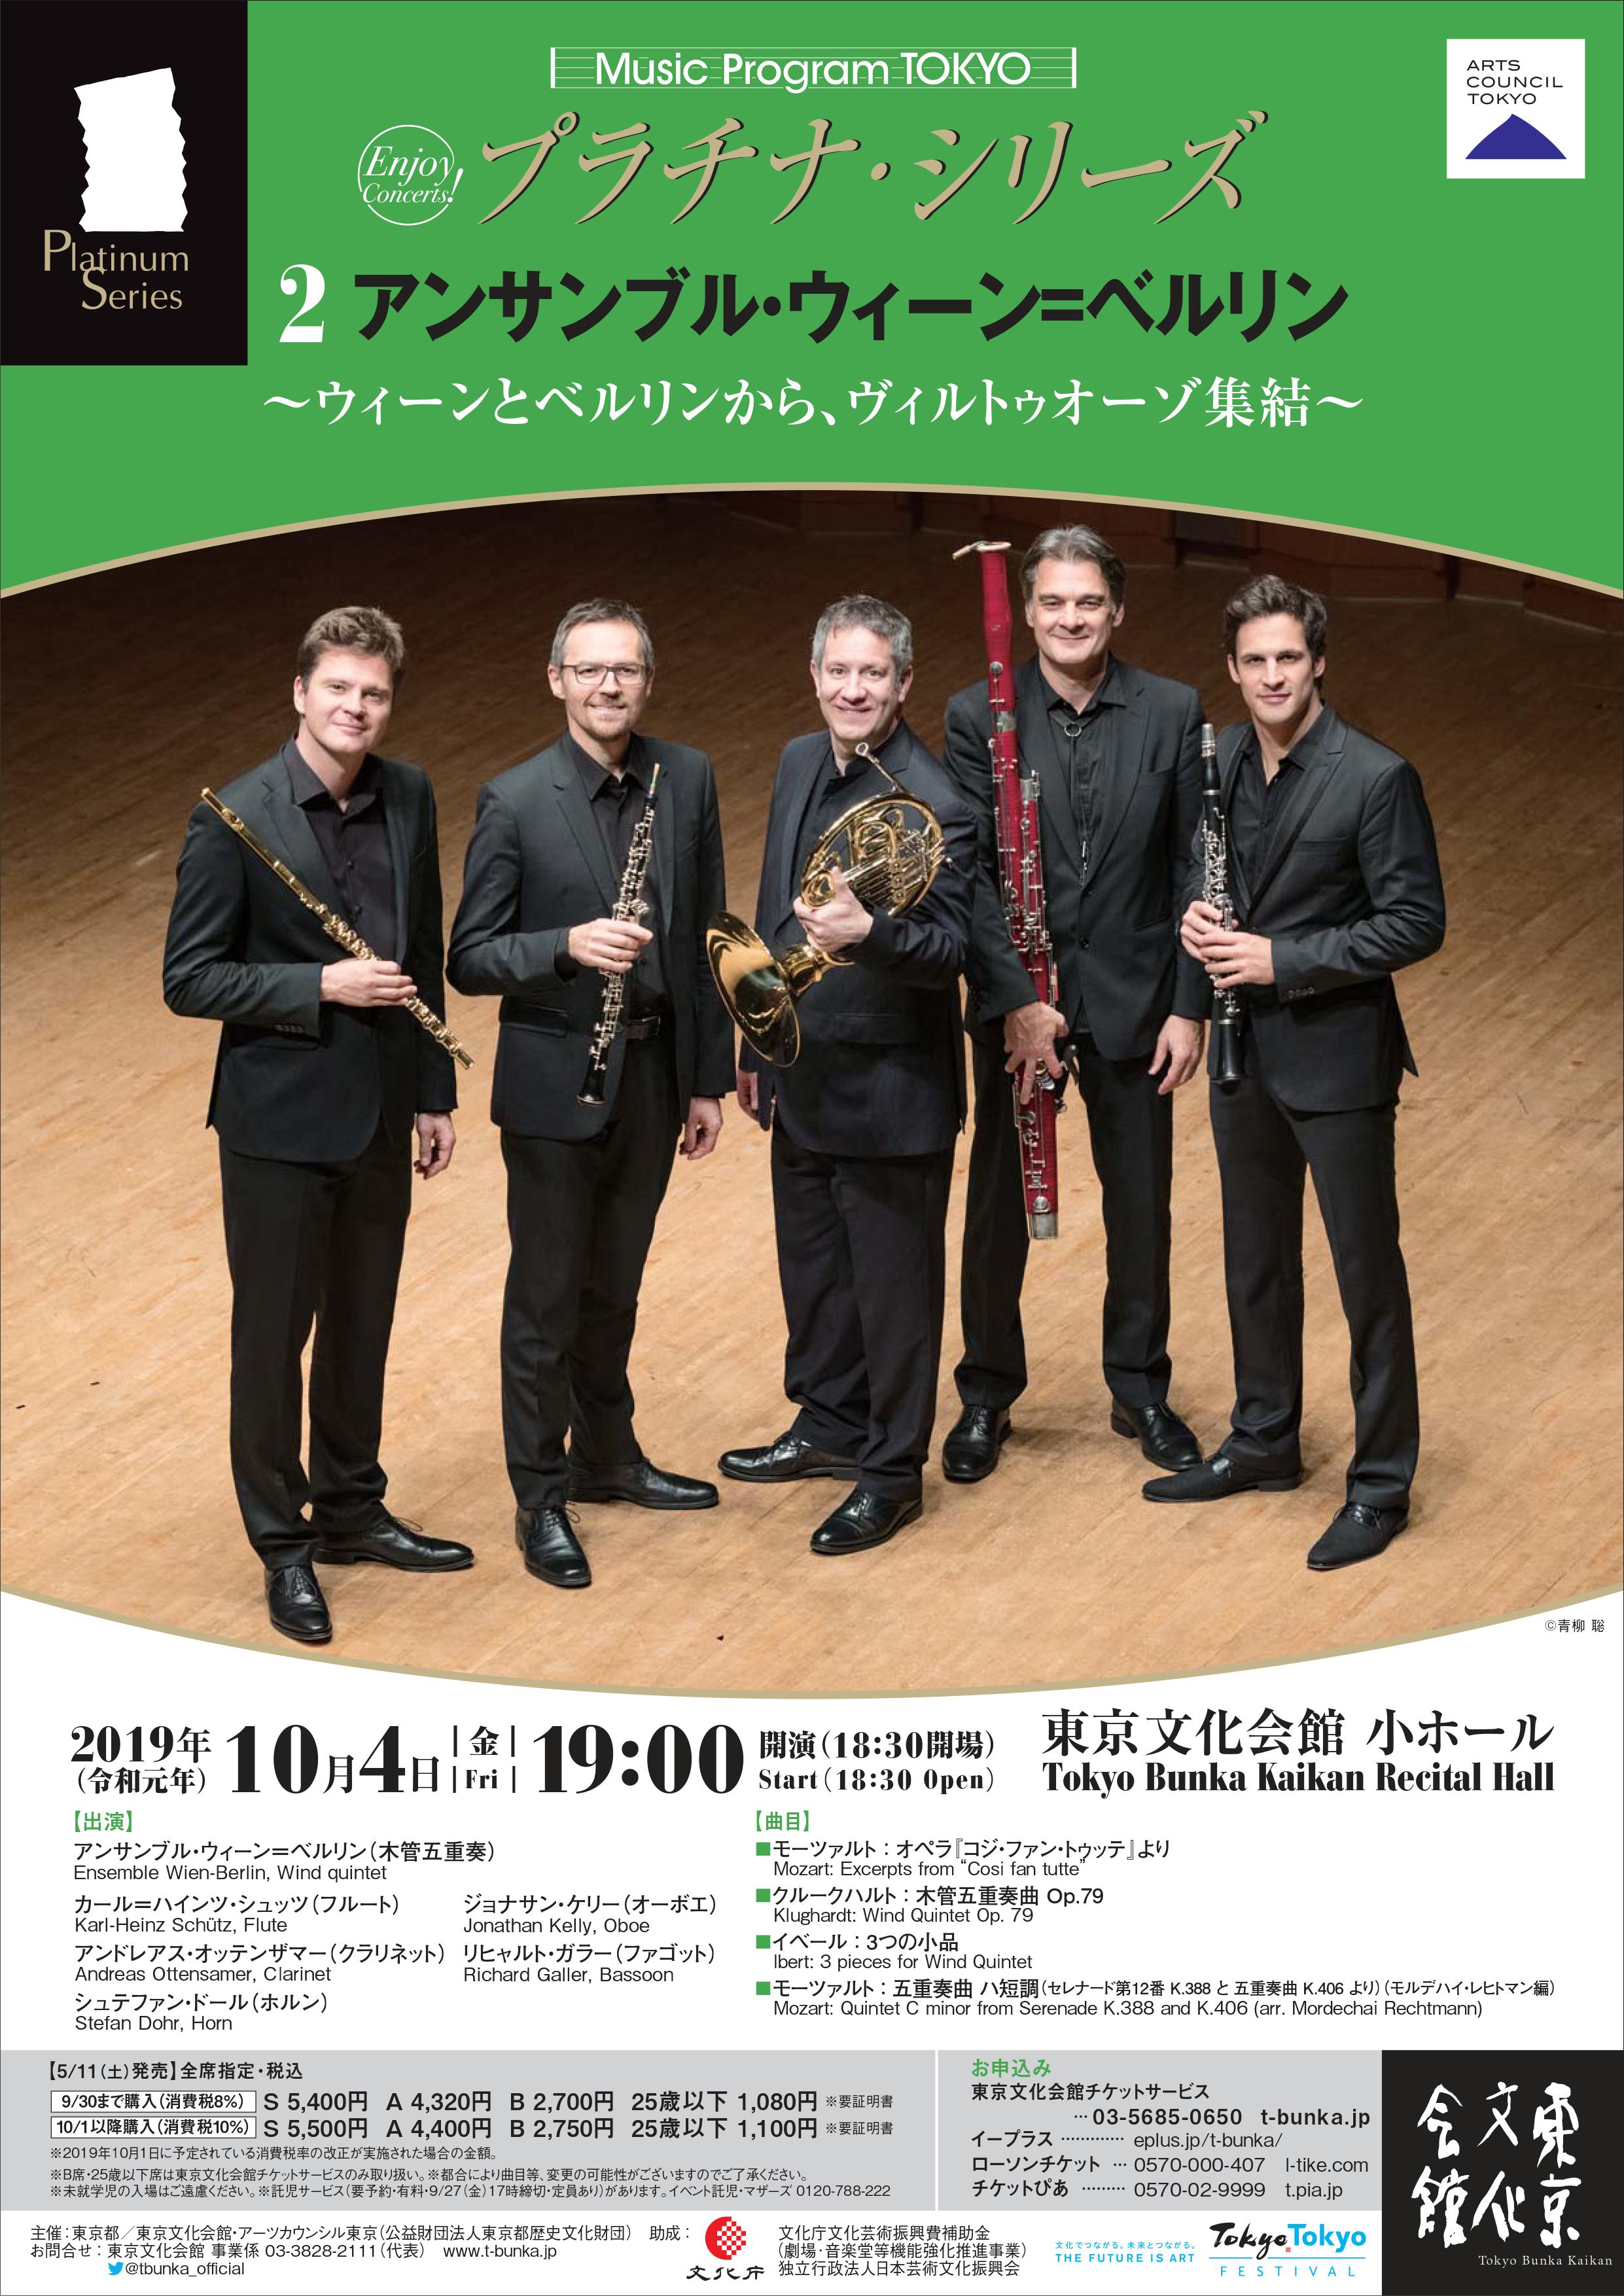 Music Program TOKYO プラチナ・シリーズ 第2回 アンサンブル・ウィーン＝ベルリン（木管五重奏） ～ウィーンとベルリンから、ヴィルトゥオーゾ集結～  | イベント情報 | 公益財団法人東京都歴史文化財団